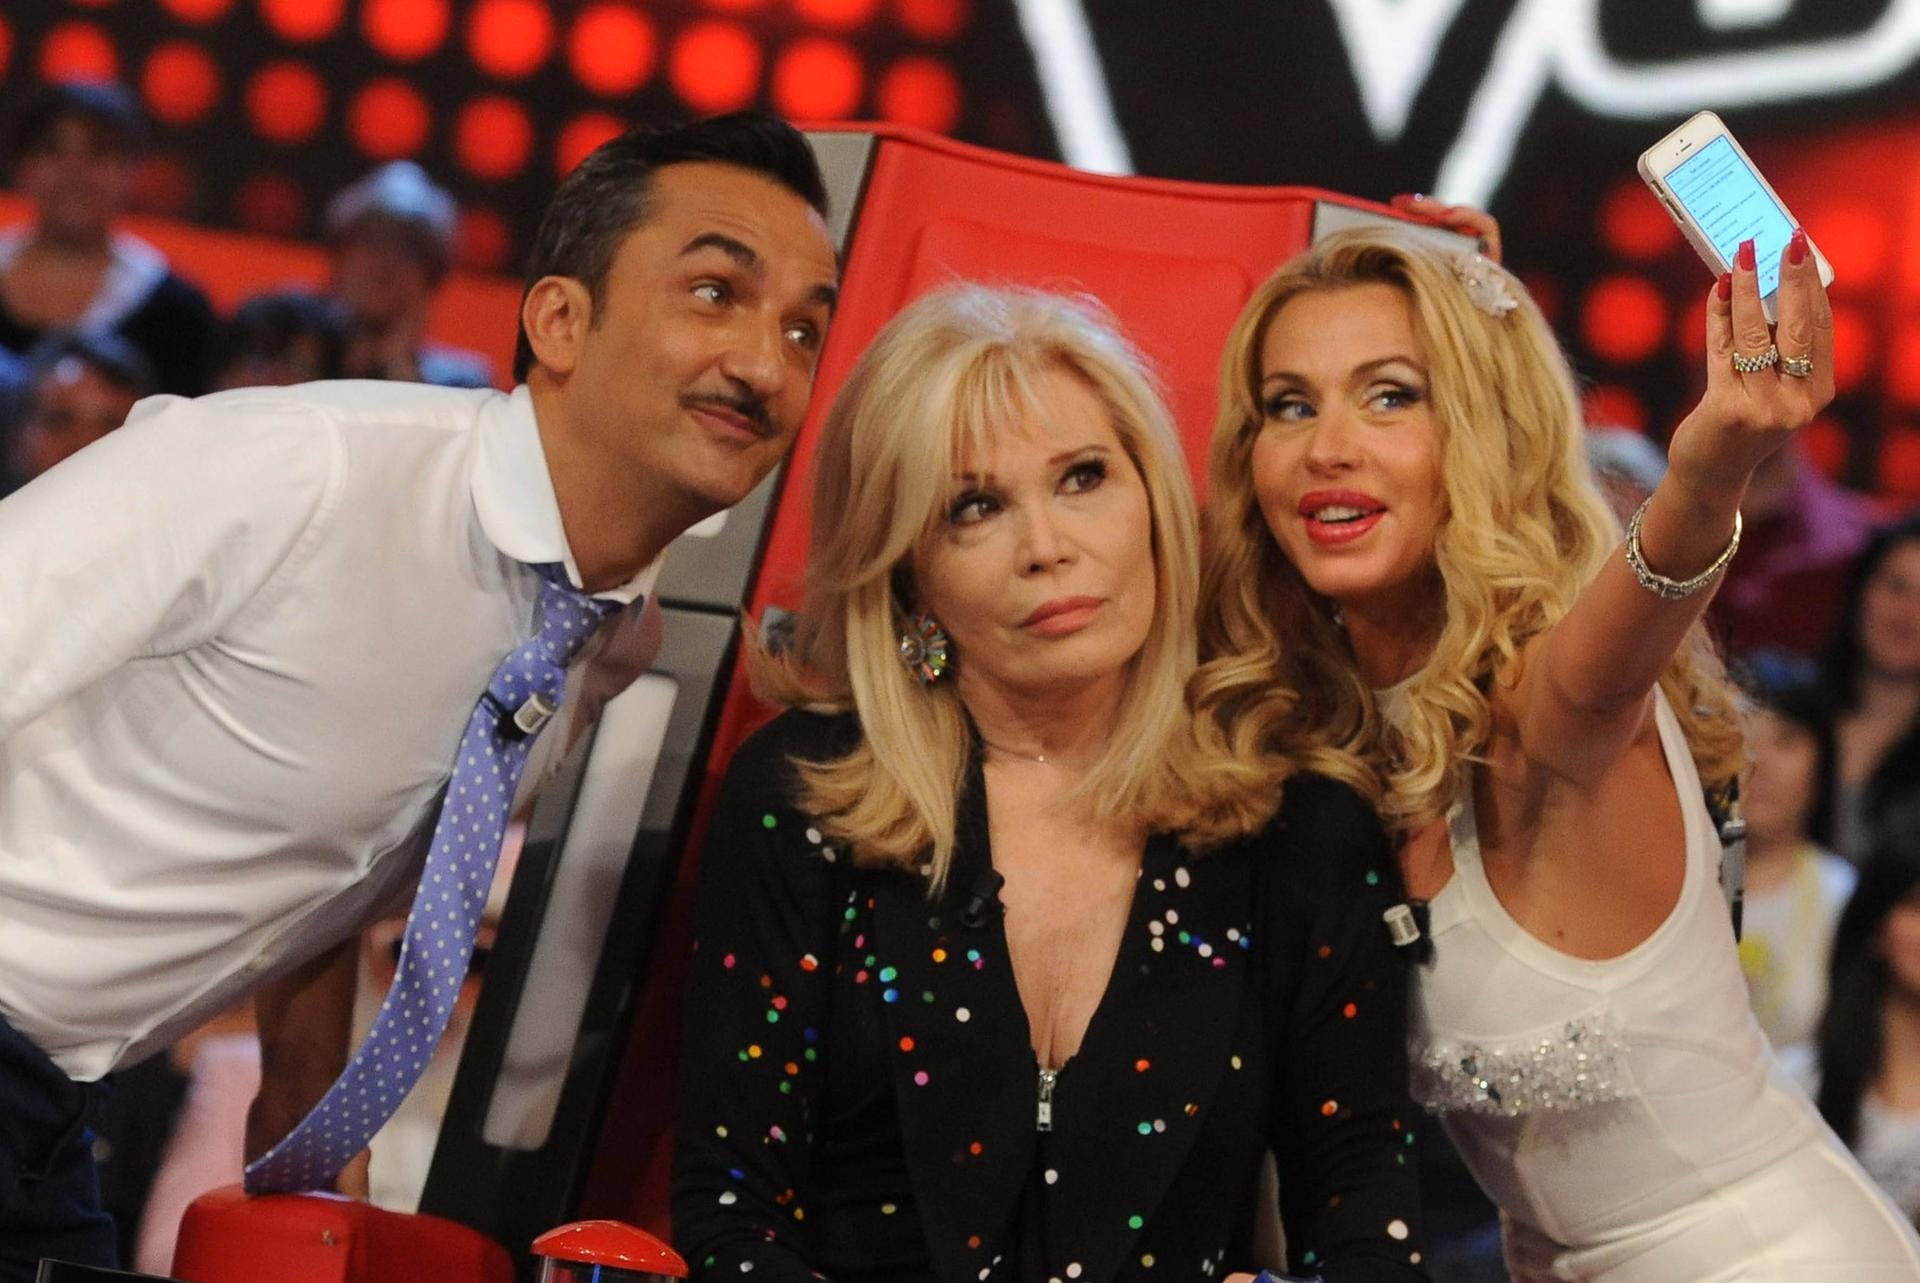 2014: Valeria Marini, Amanda Lear und Nicola Savino für die italienische Unterhaltungsshow "Quelli che... il Calcio".